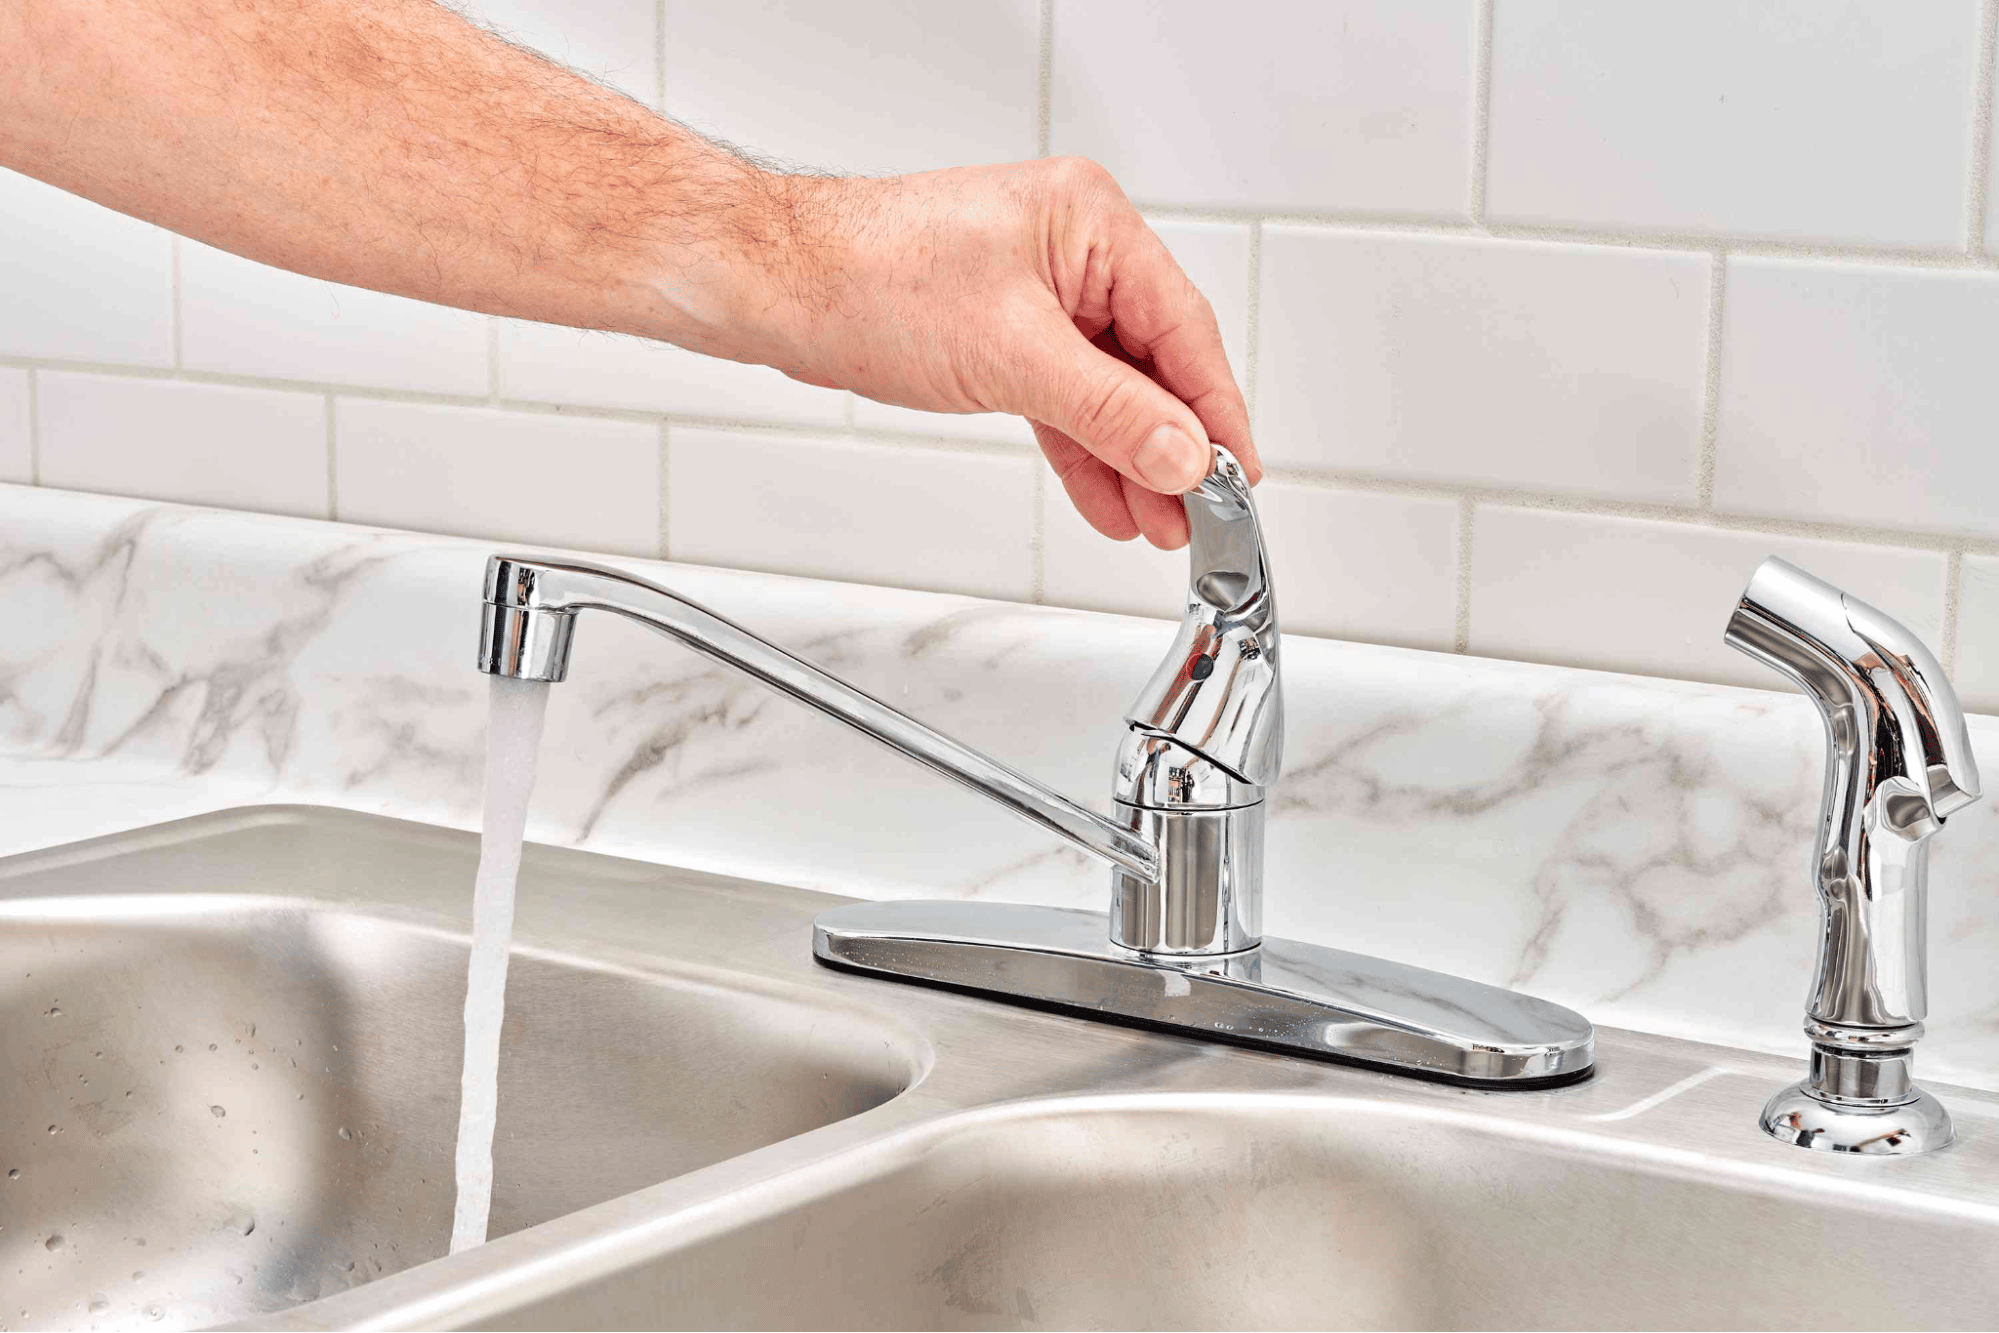 A person utilizing a faucet